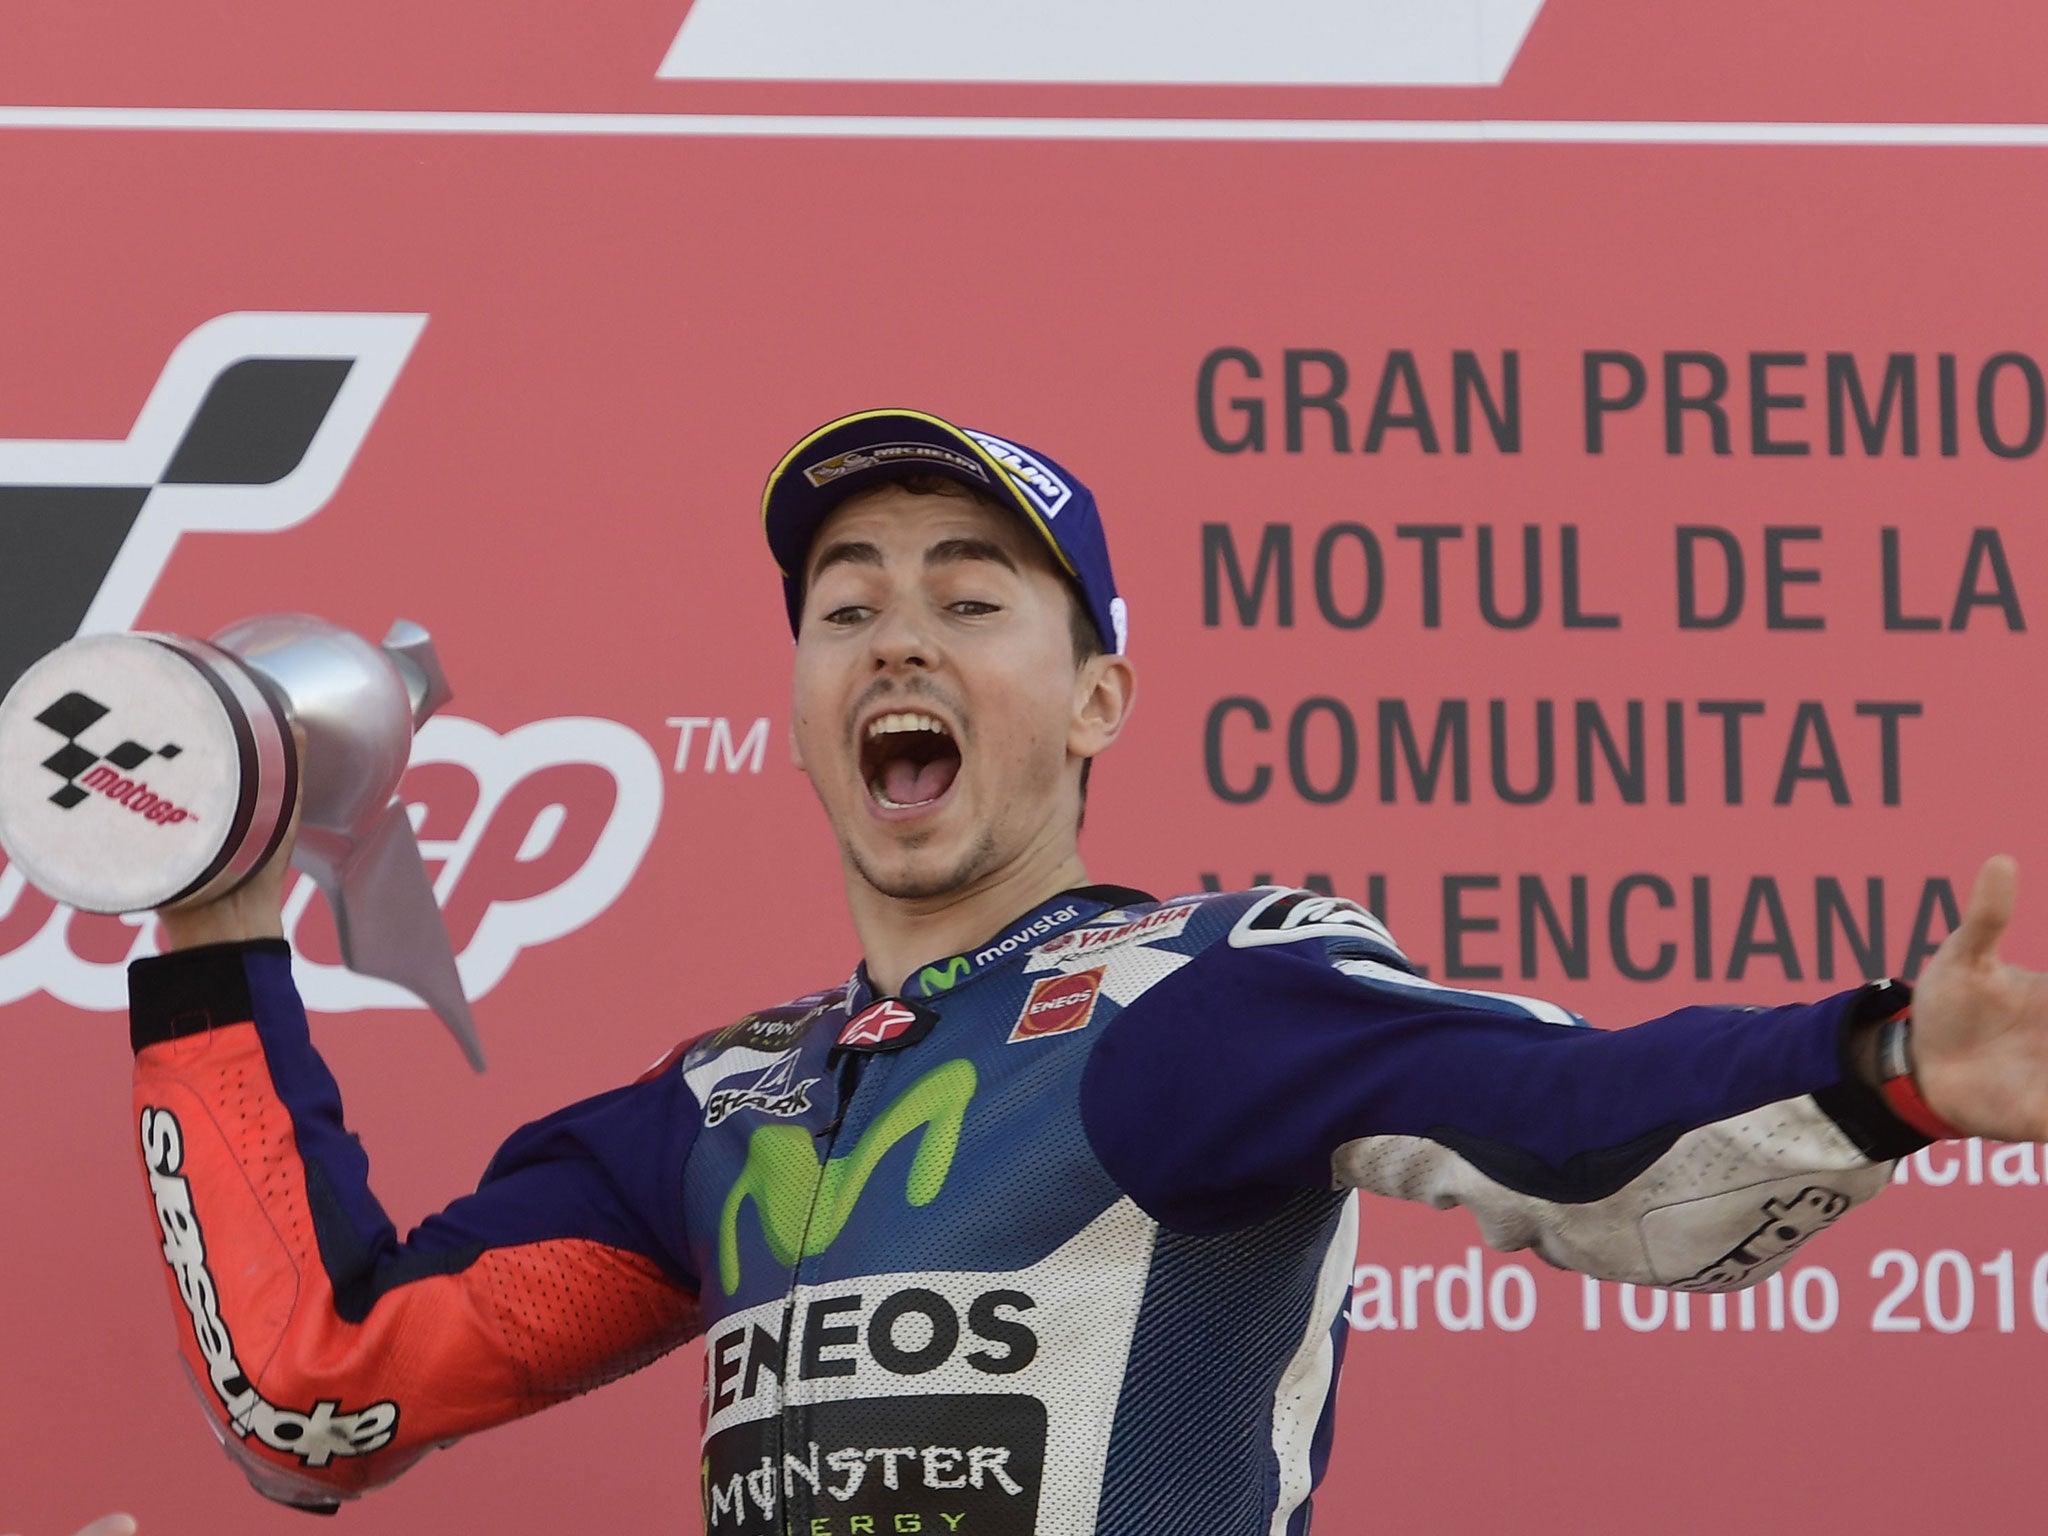 Jorge Lorenzo celebrates his victory in the Valencia Grand Prix